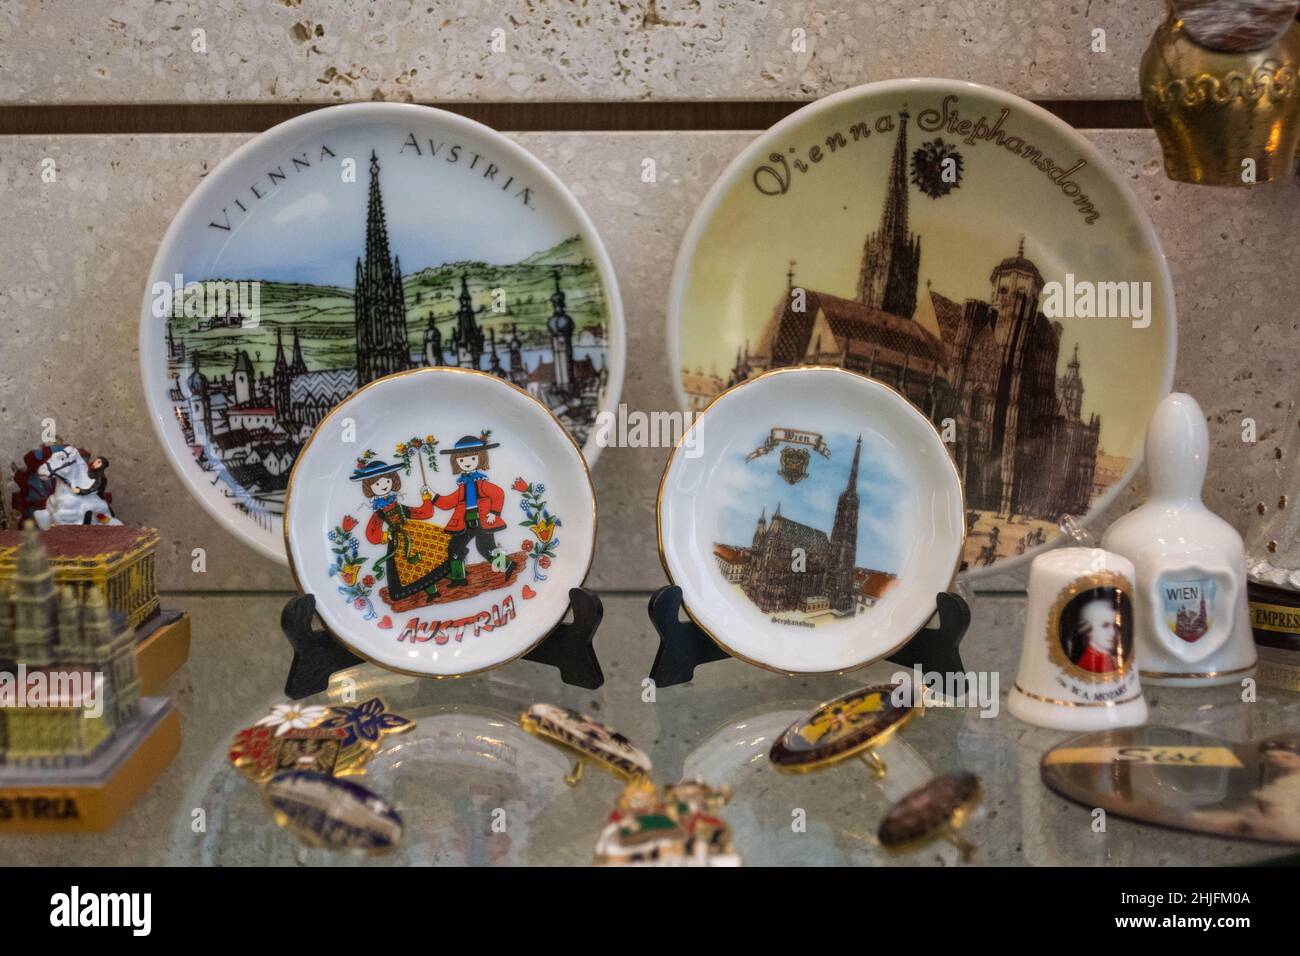 Tienda de souvenirs, Viena, Austria Foto de stock